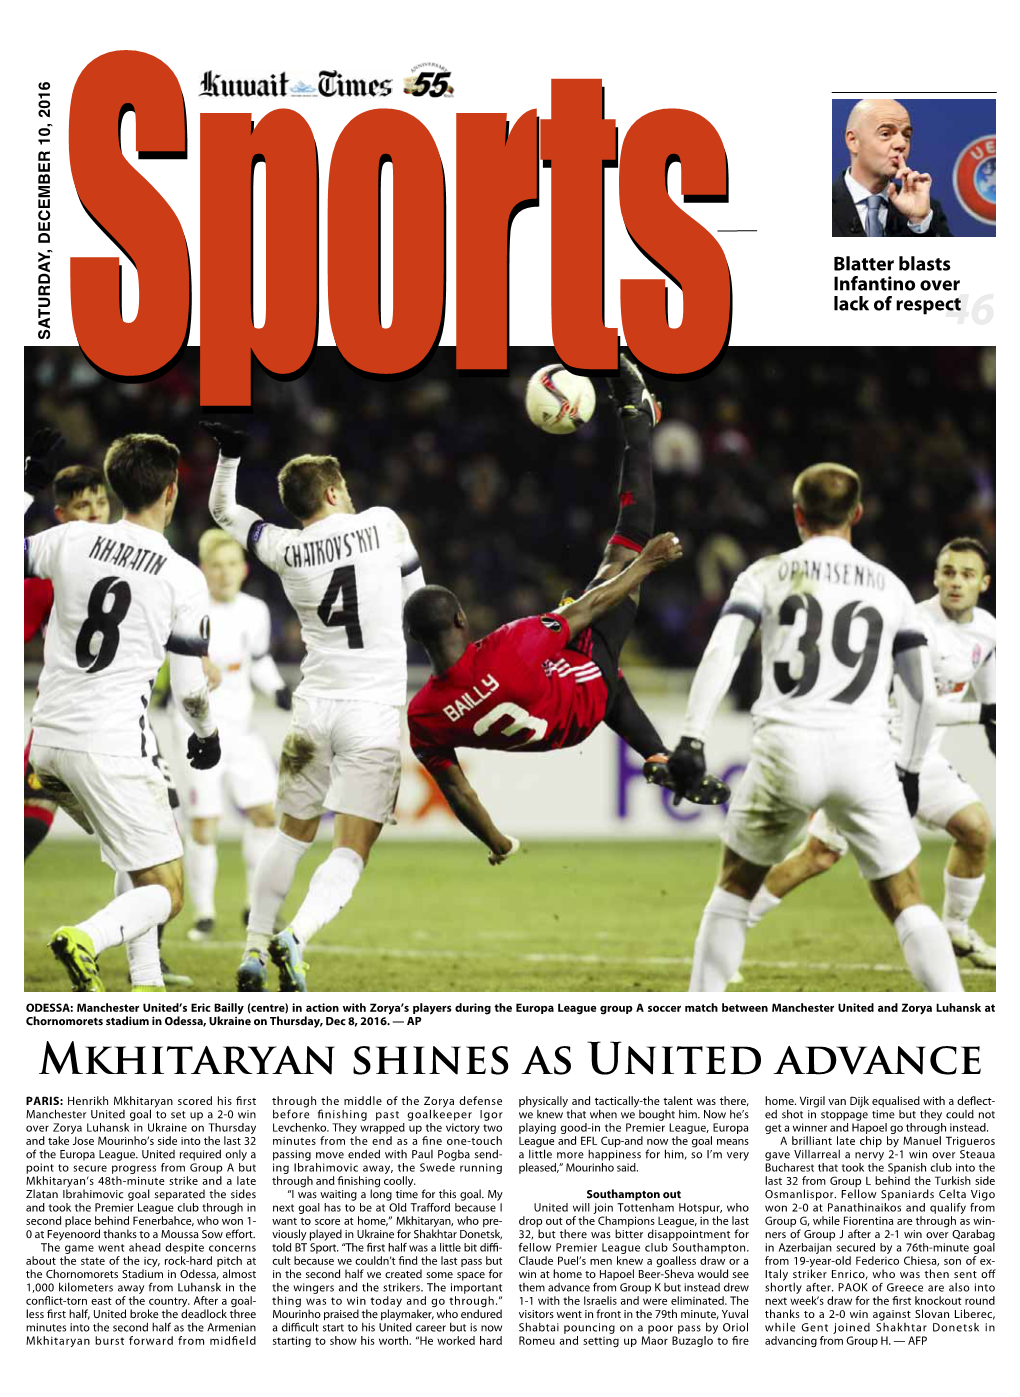 Mkhitaryan Shines As United Advance